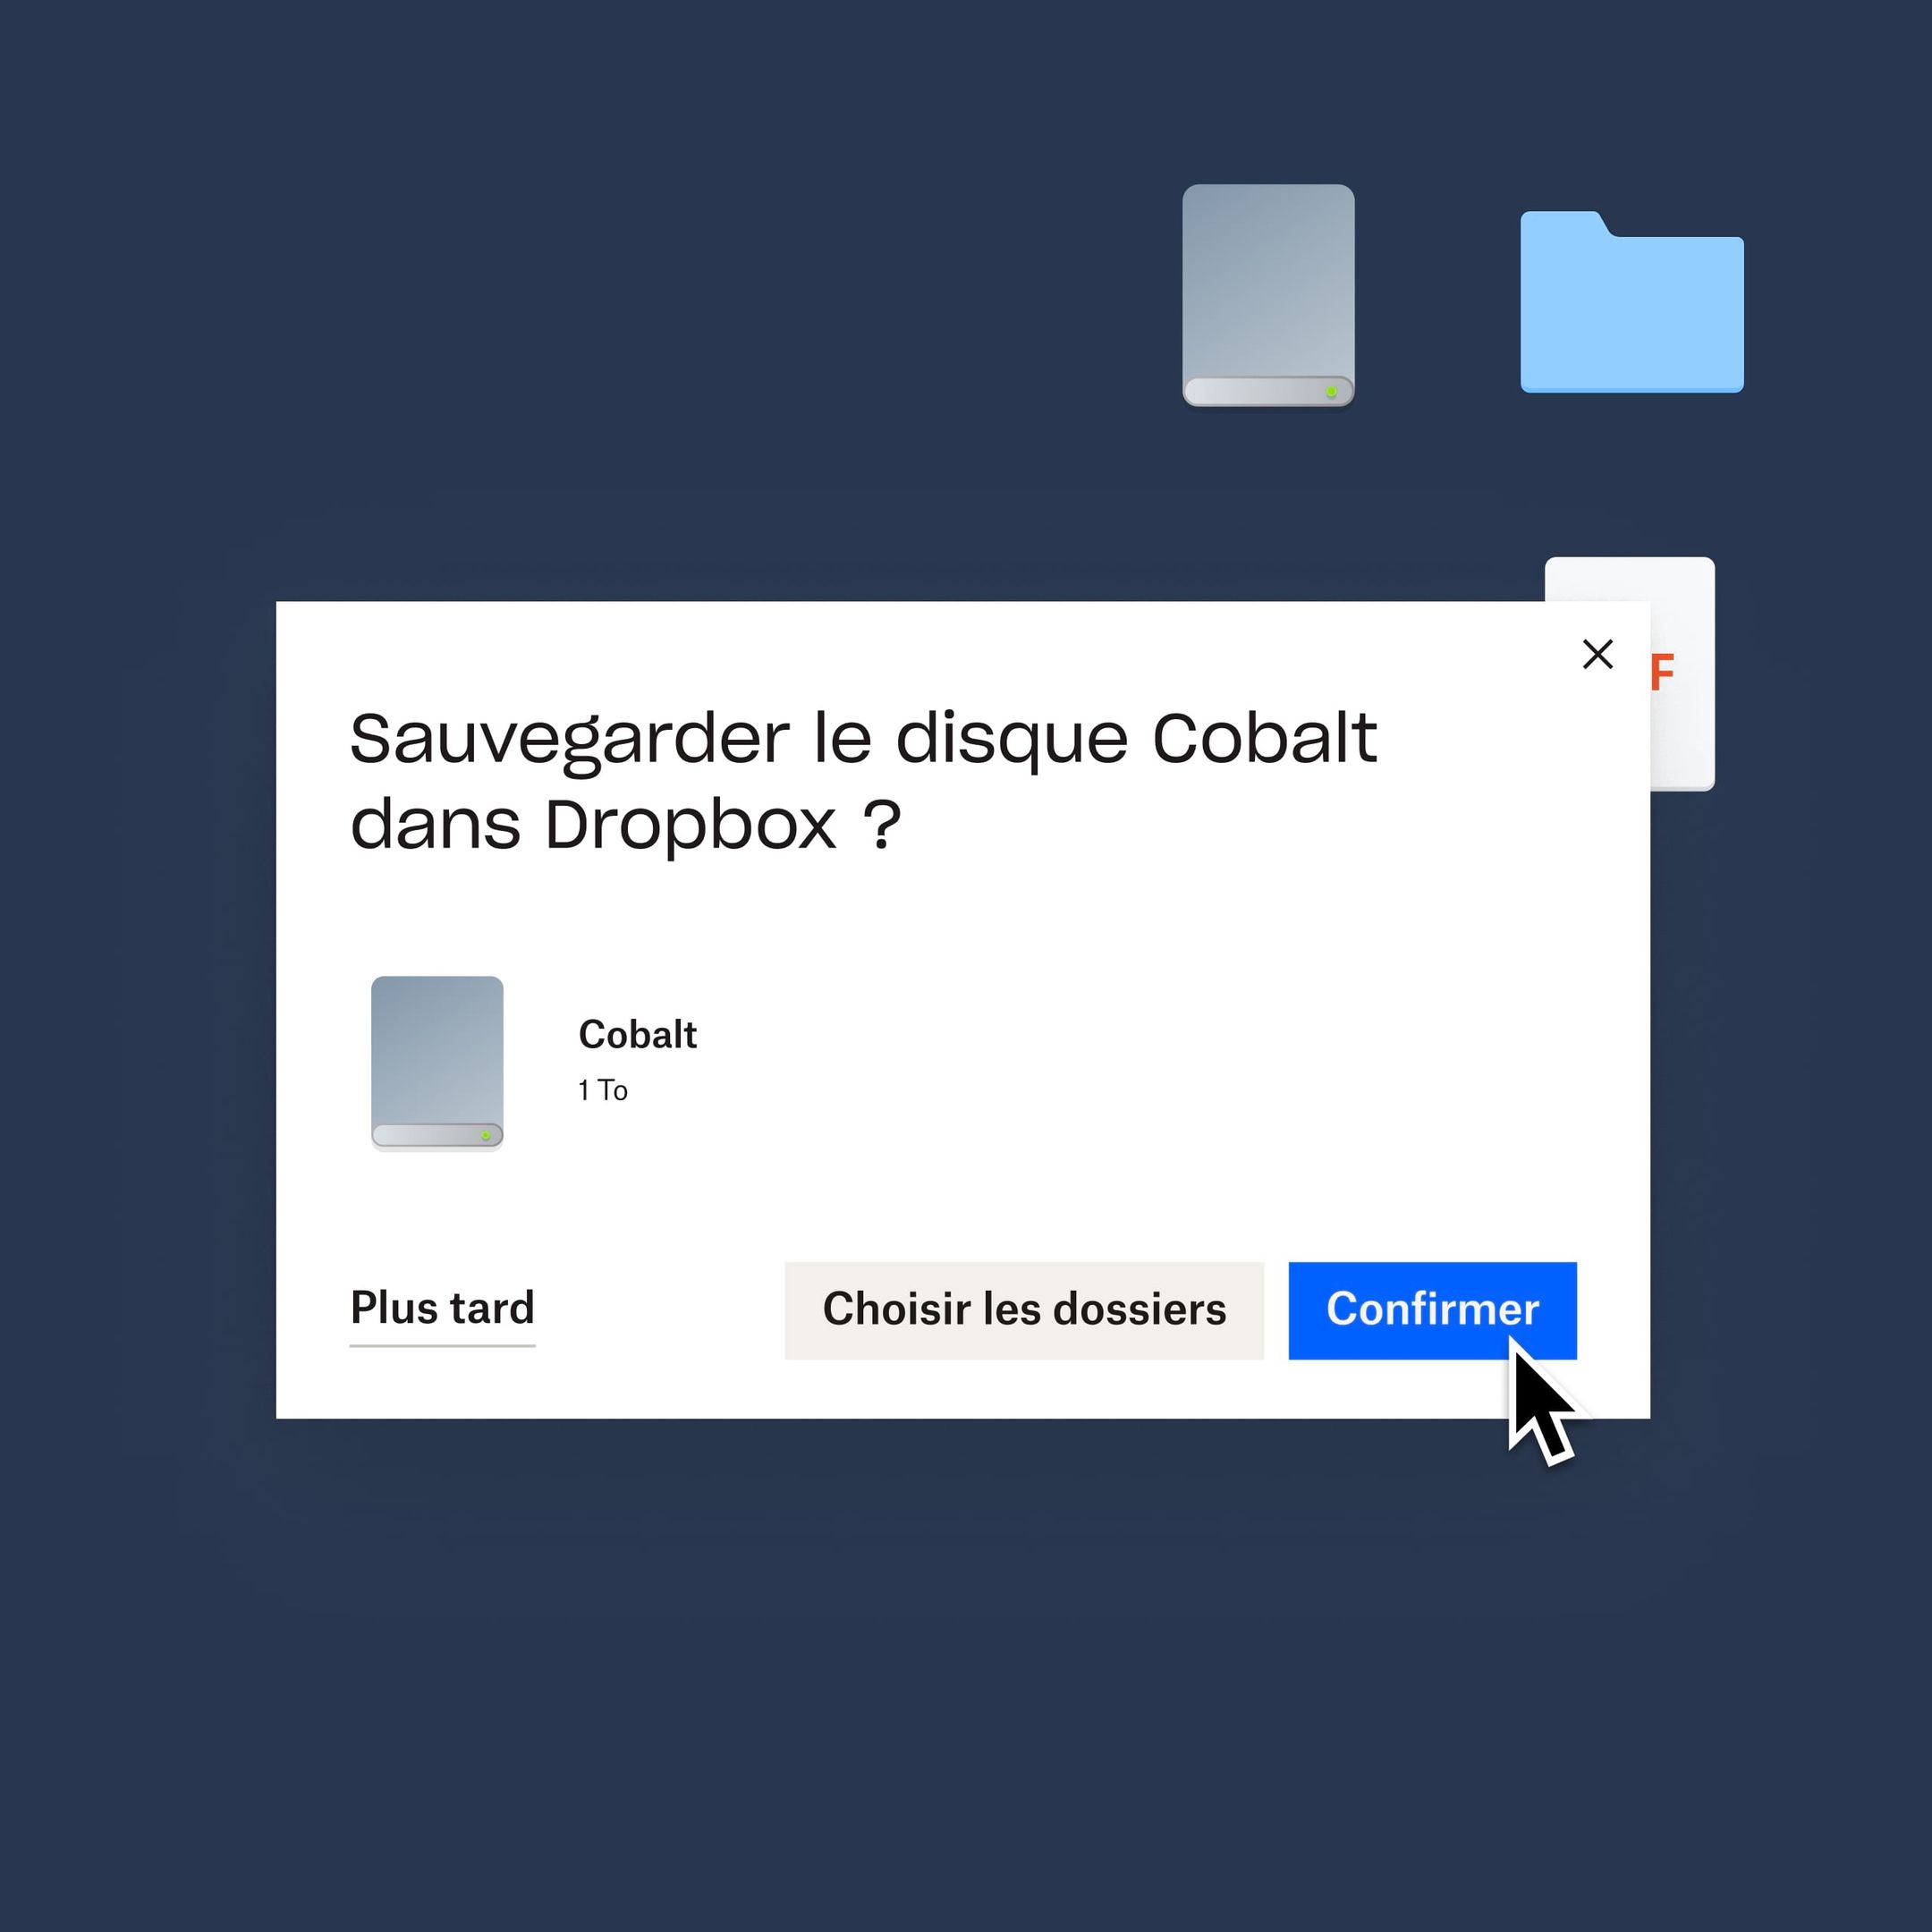 Utilisateur cliquant sur un bouton bleu “Confirmer” pour sauvegarder son disque Cobalt dans Dropbox